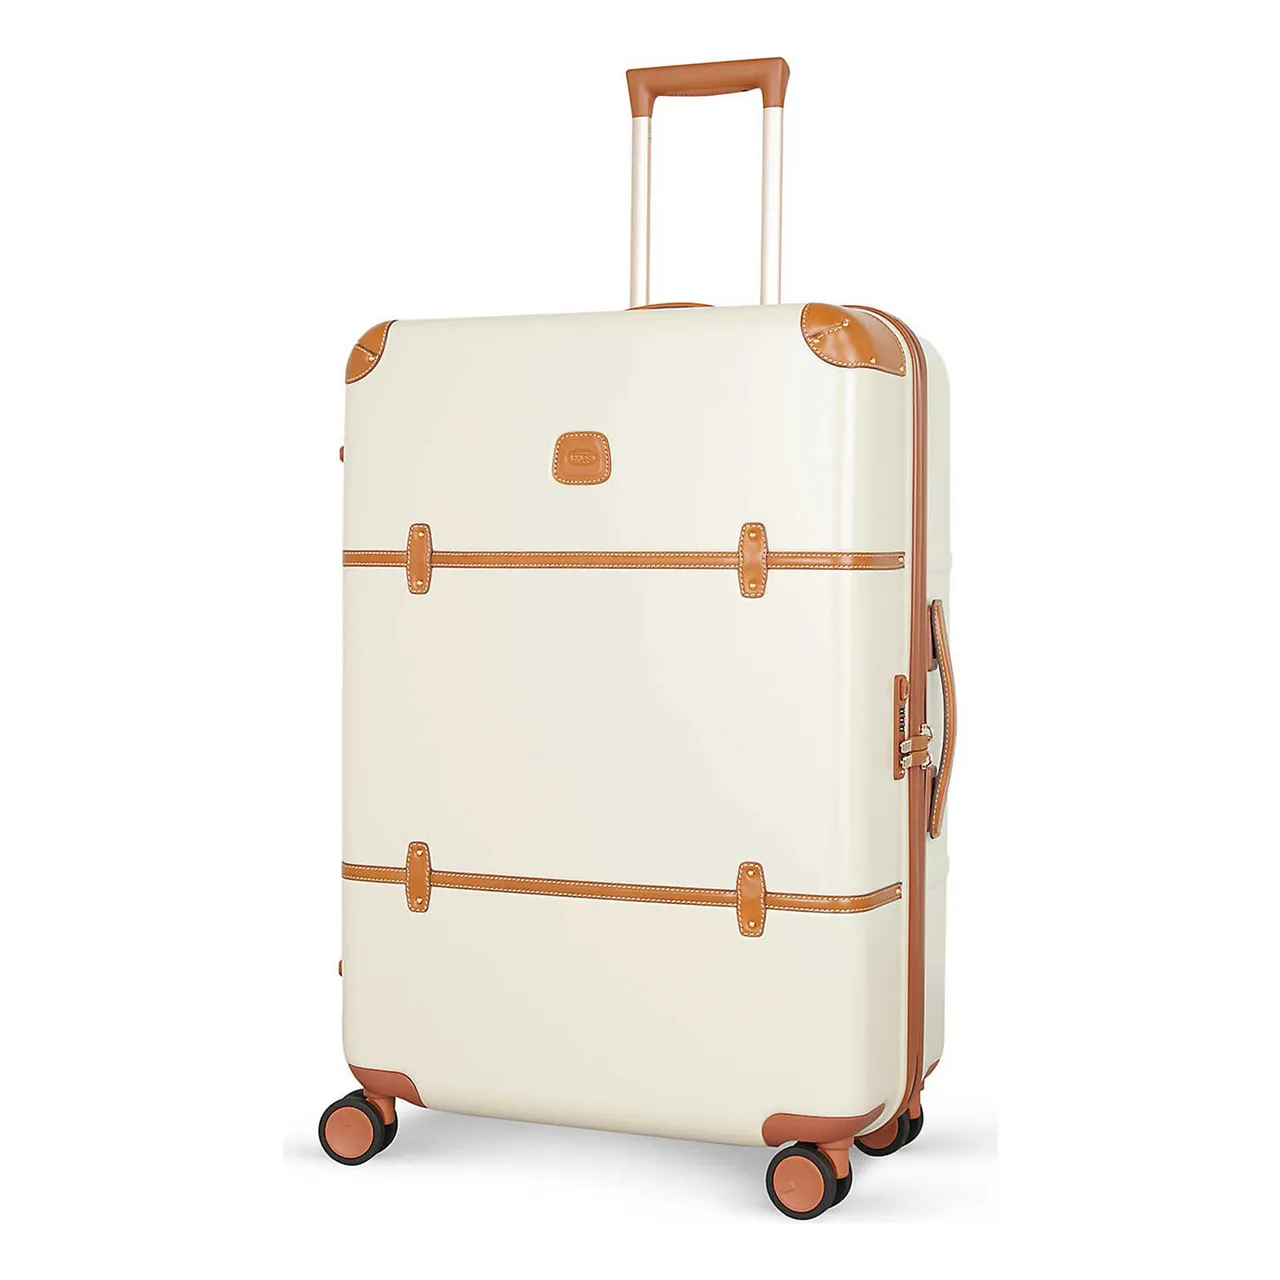 Bellagio four-wheel suitcase